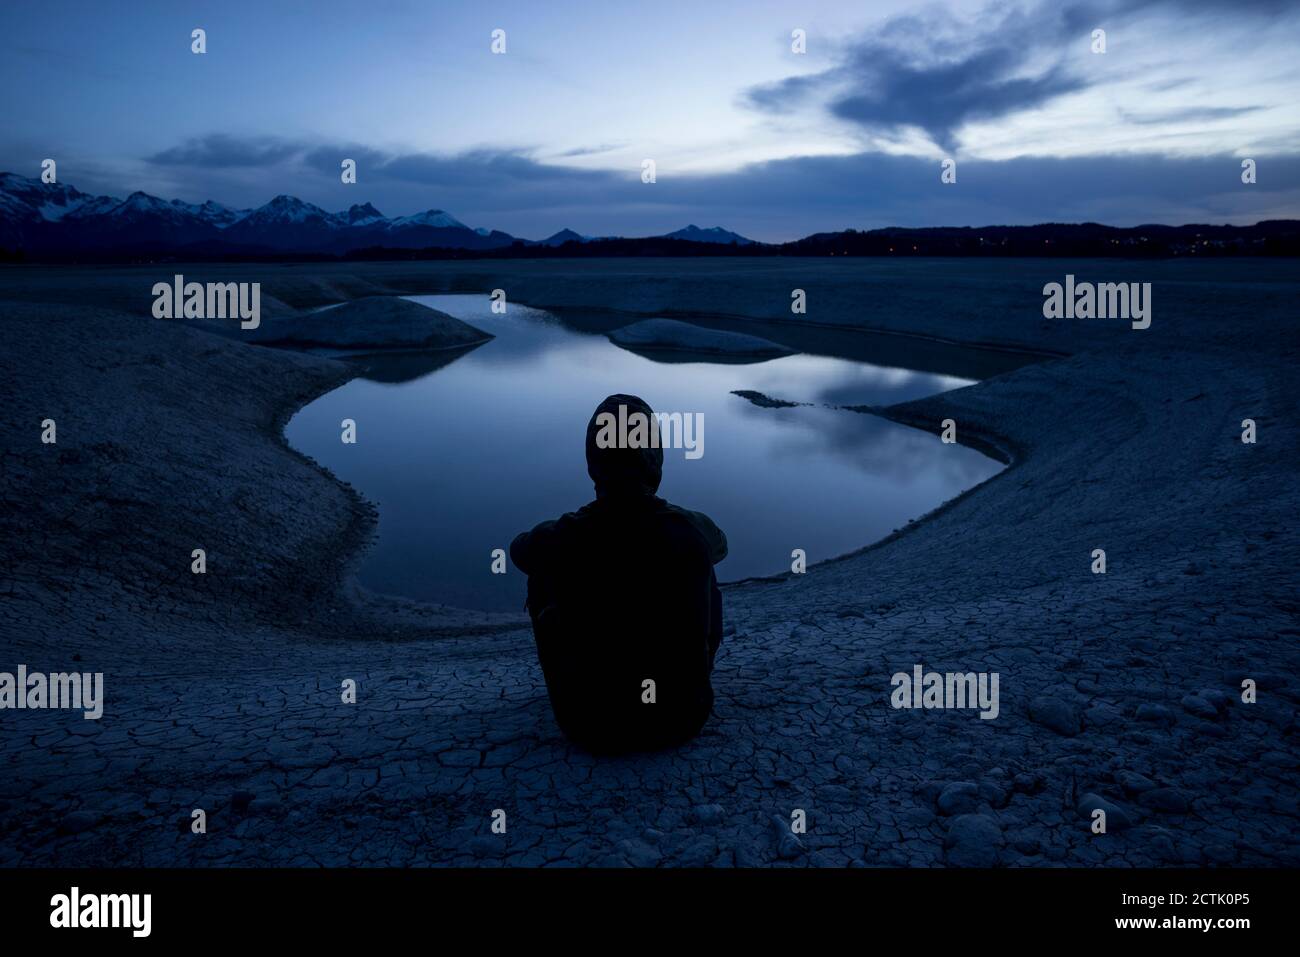 Germania, Baviera, Silhouette di uomo agganciato che ammirano il lago di Forggensee al crepuscolo Foto Stock